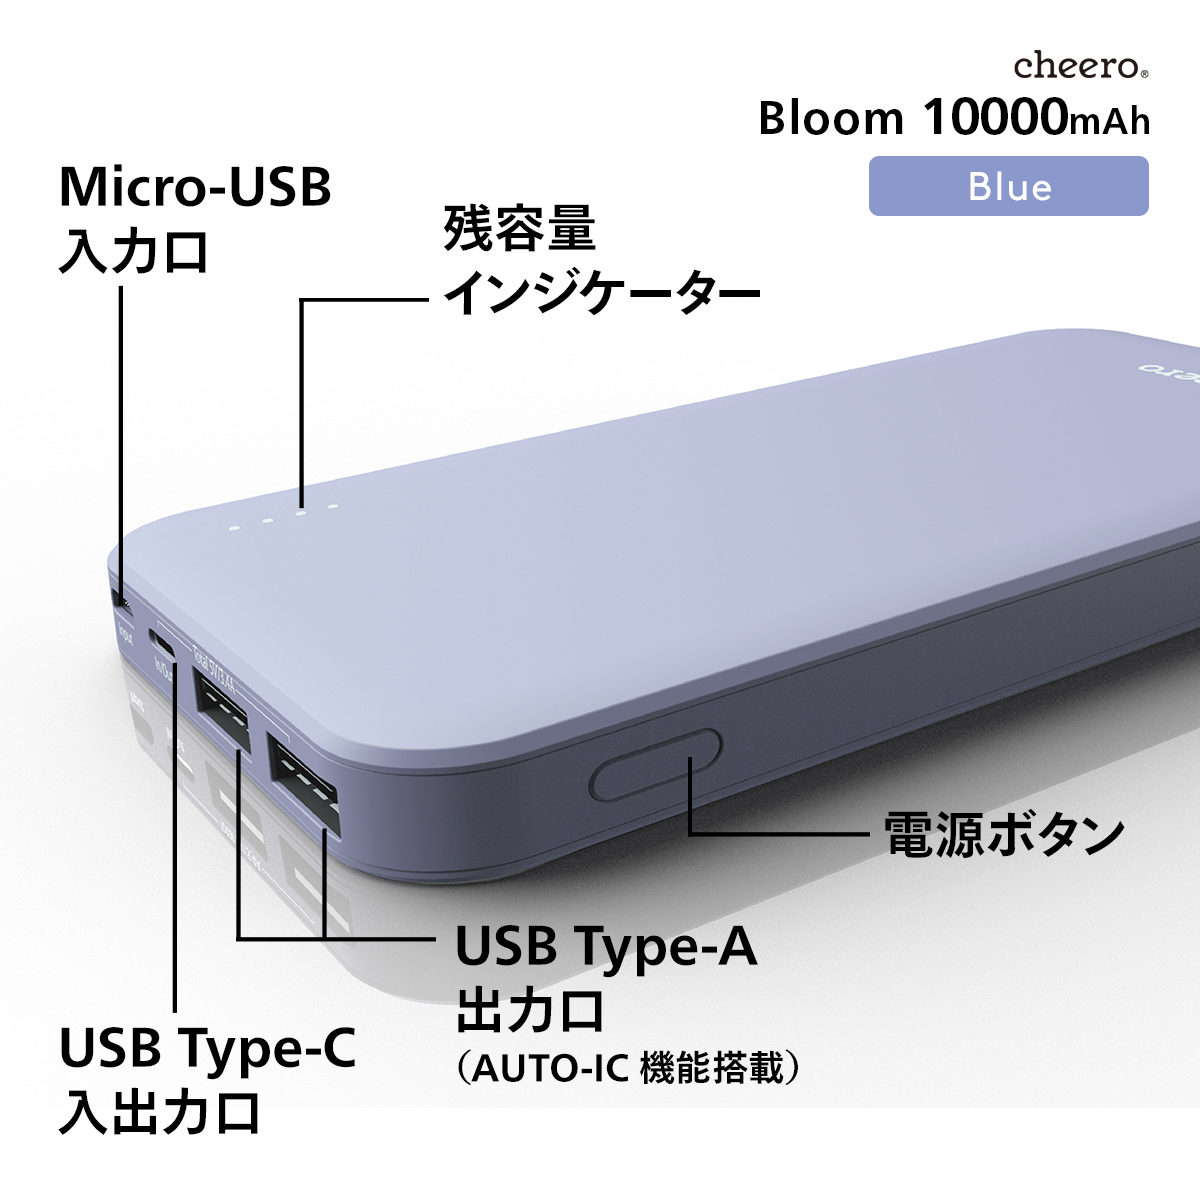 うのにもお得な情報満載！モバイルバッテリー 大容量 iPhone 3ポート出力 Android AUTO-IC搭載 Type-A micro チーロ  急速充電 PSEマーク付 Type-C cheero 10000mAh Bloom 対応 USB スマートフォン・タブレット 